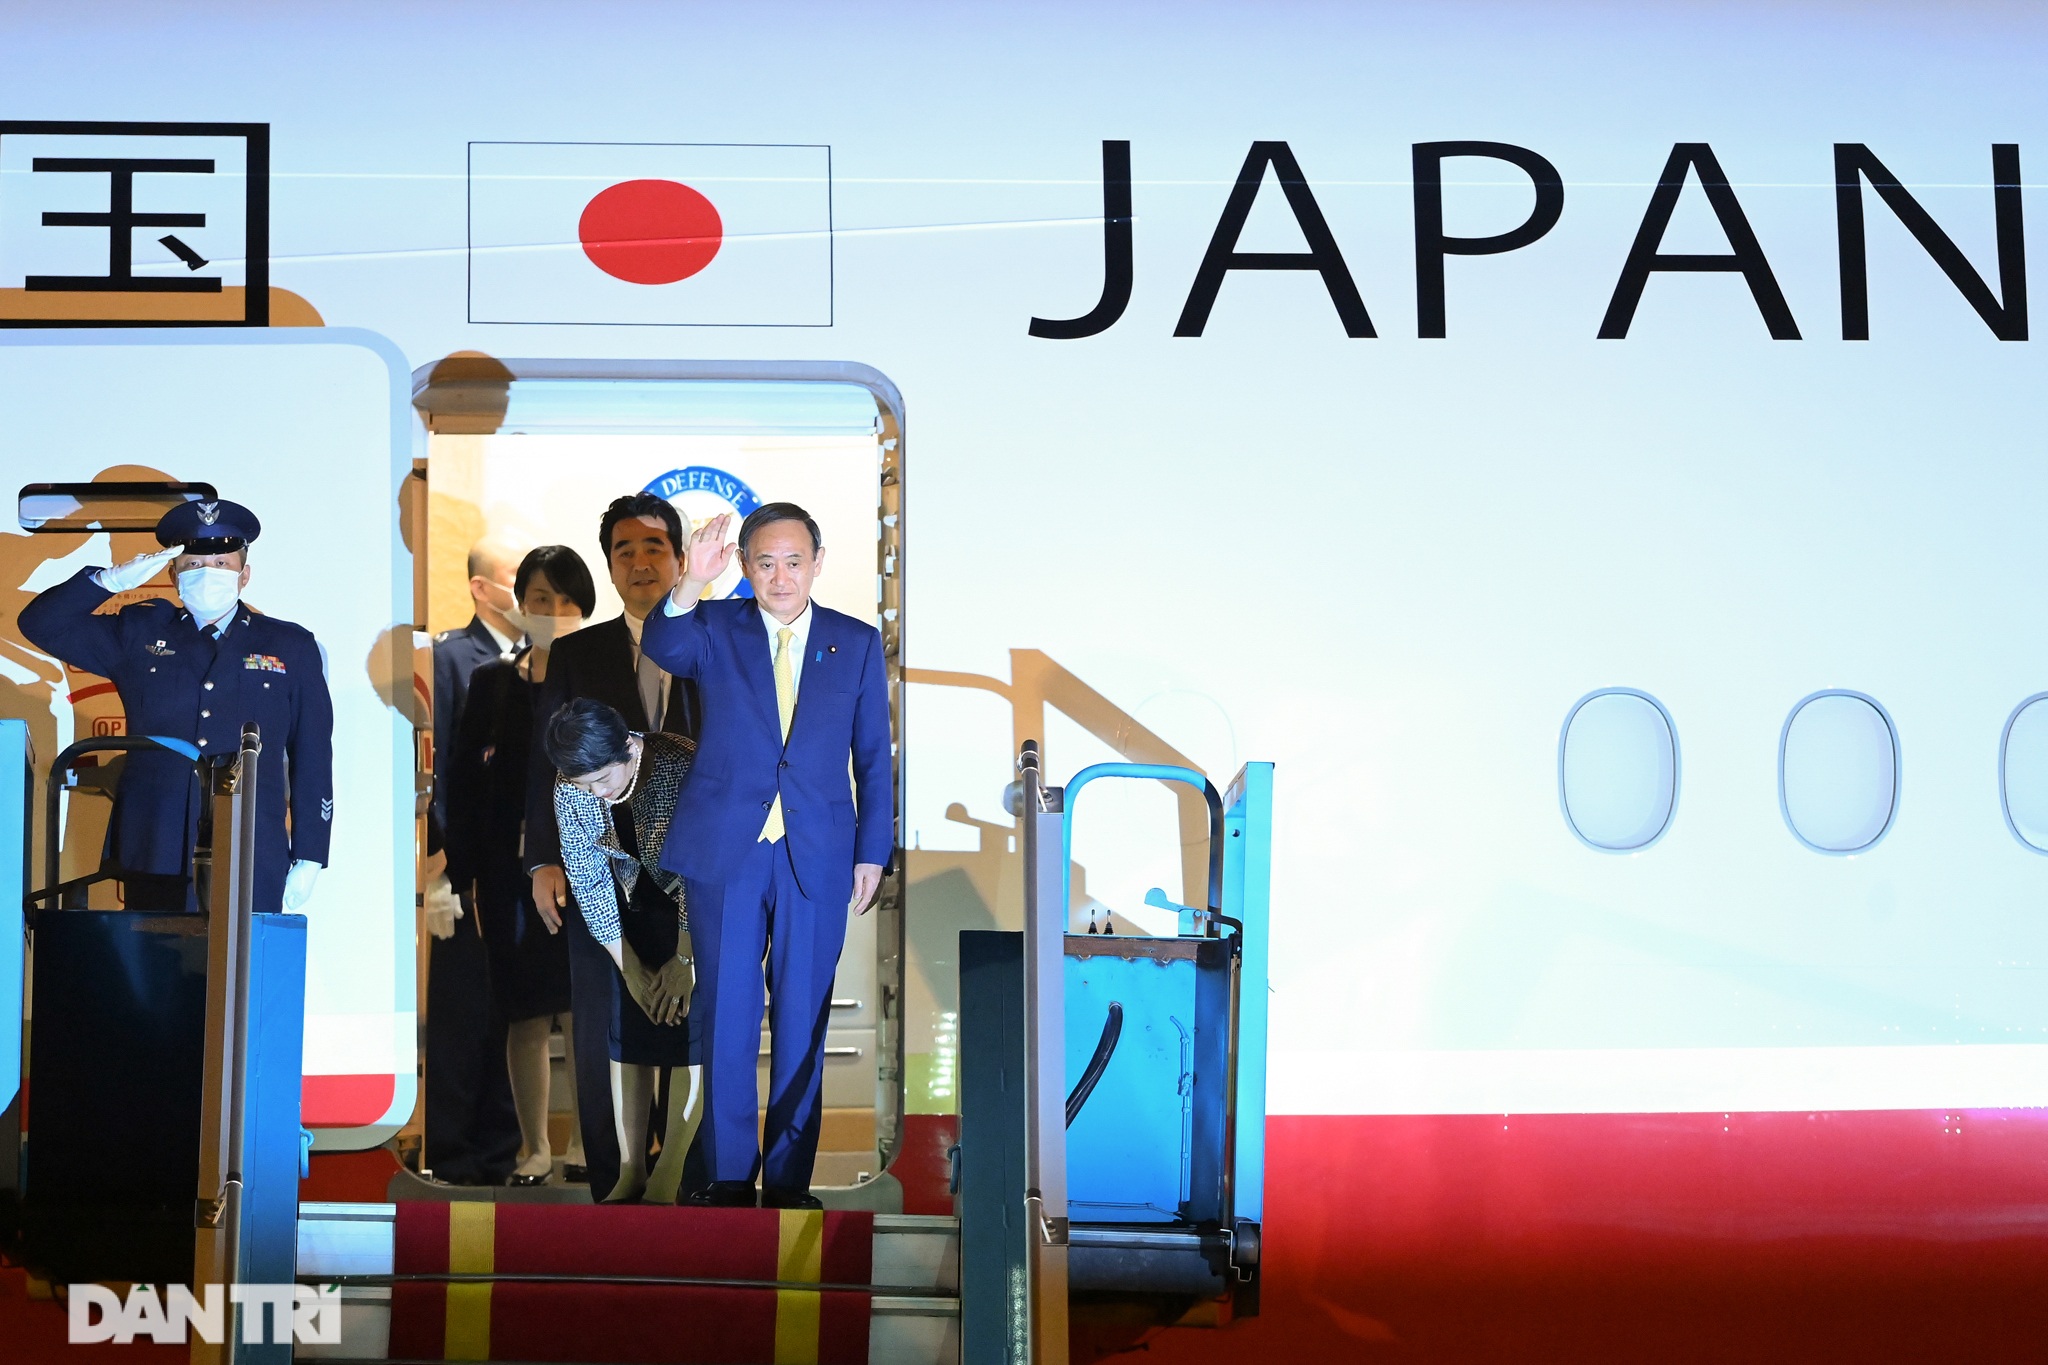 Chuyên cơ của Thủ tướng Nhật Bản hạ cánh xuống sân bay Nội Bài - 3